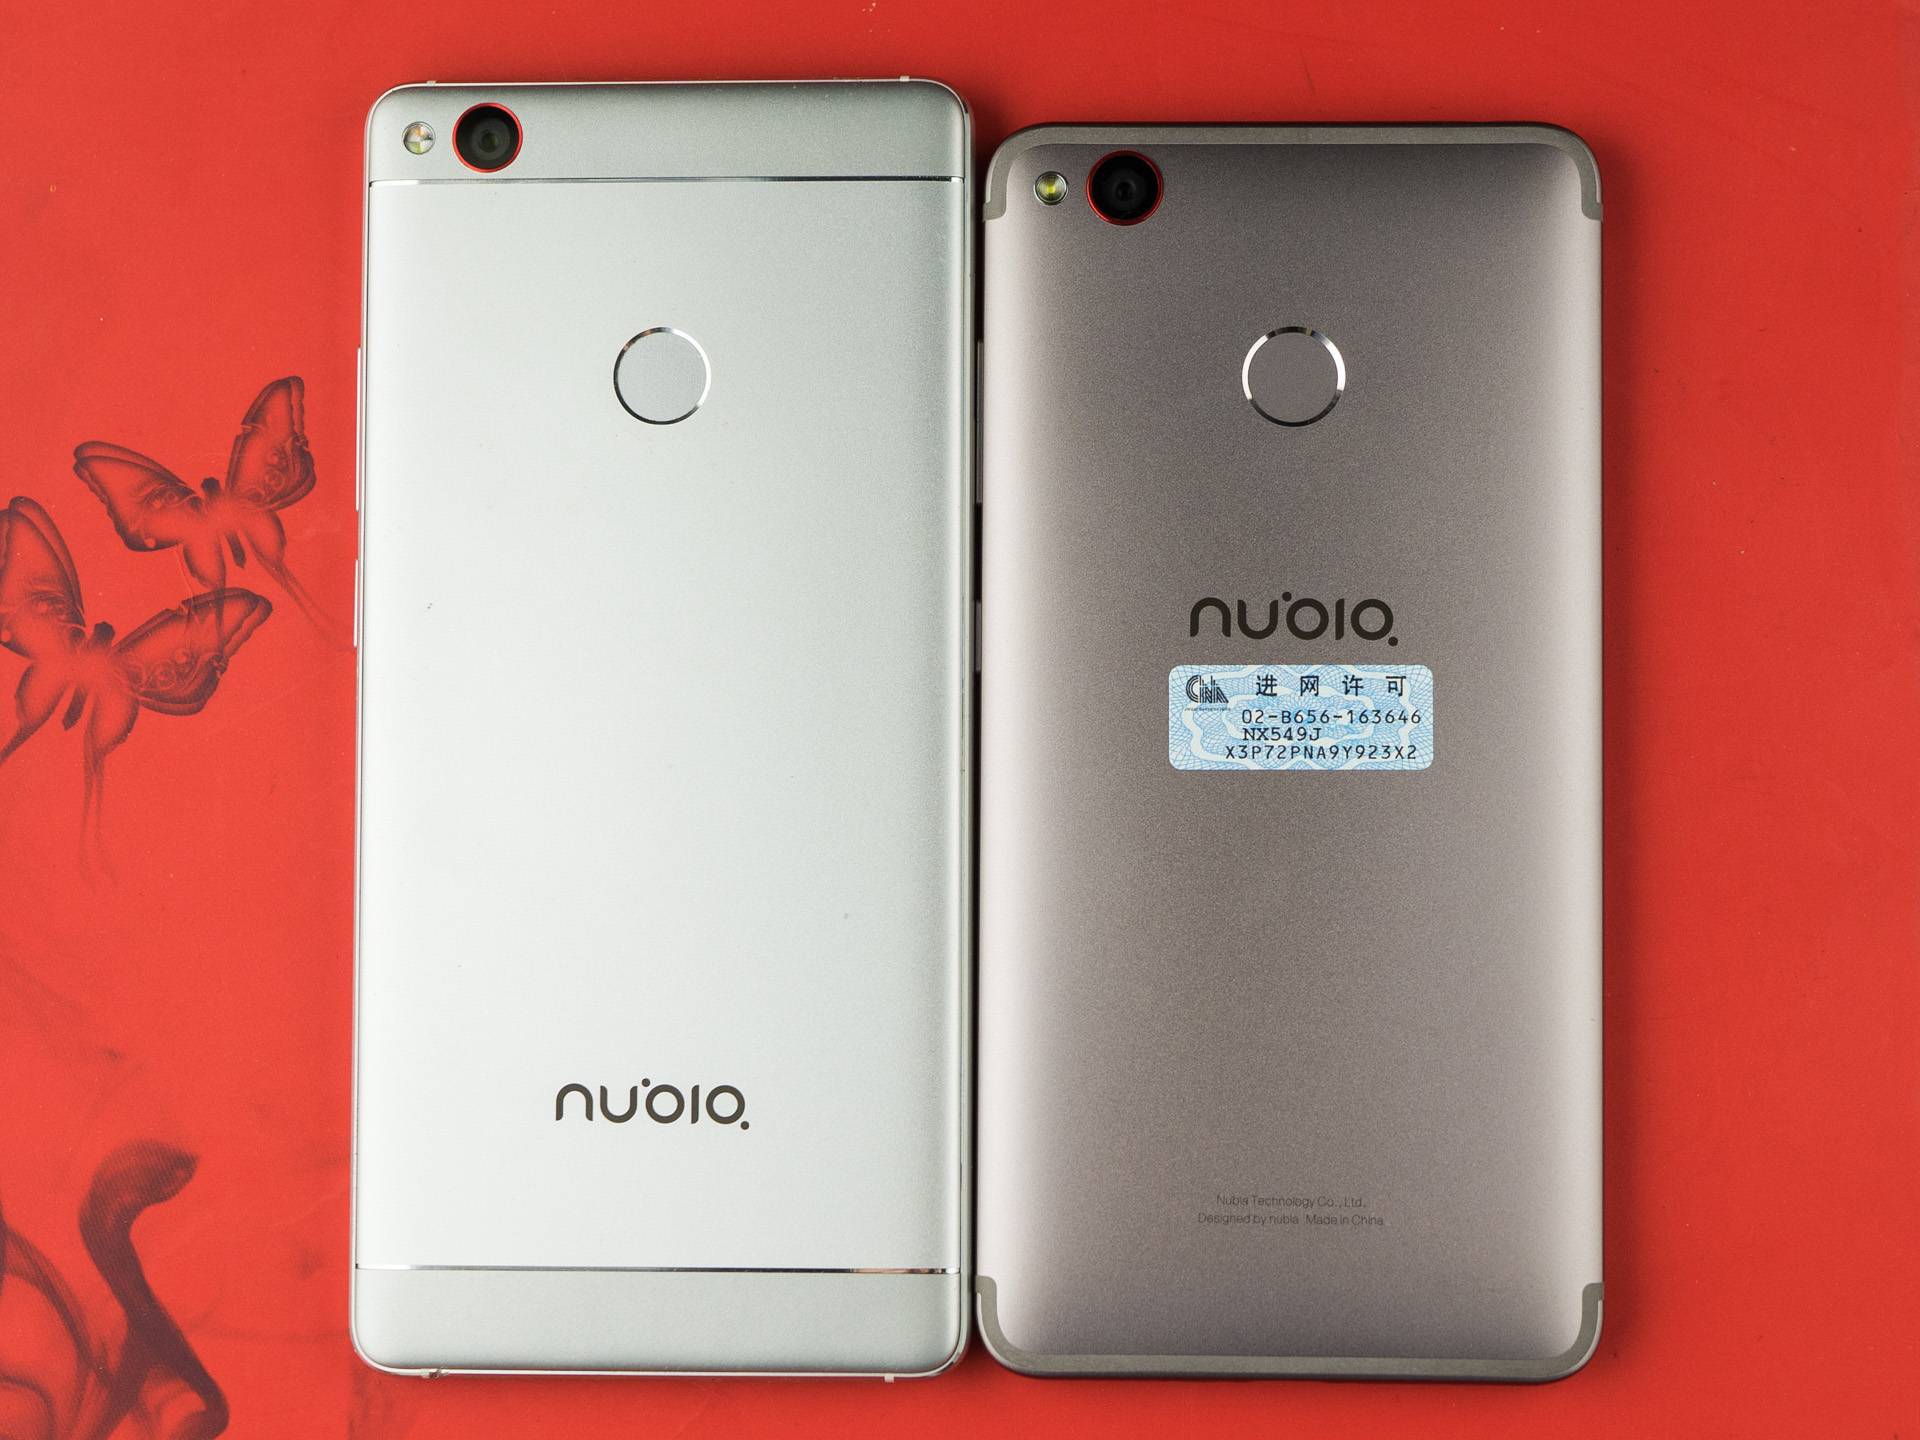 更技术专业的照相手机Nubia Z11 miniS测评之拆箱晒单